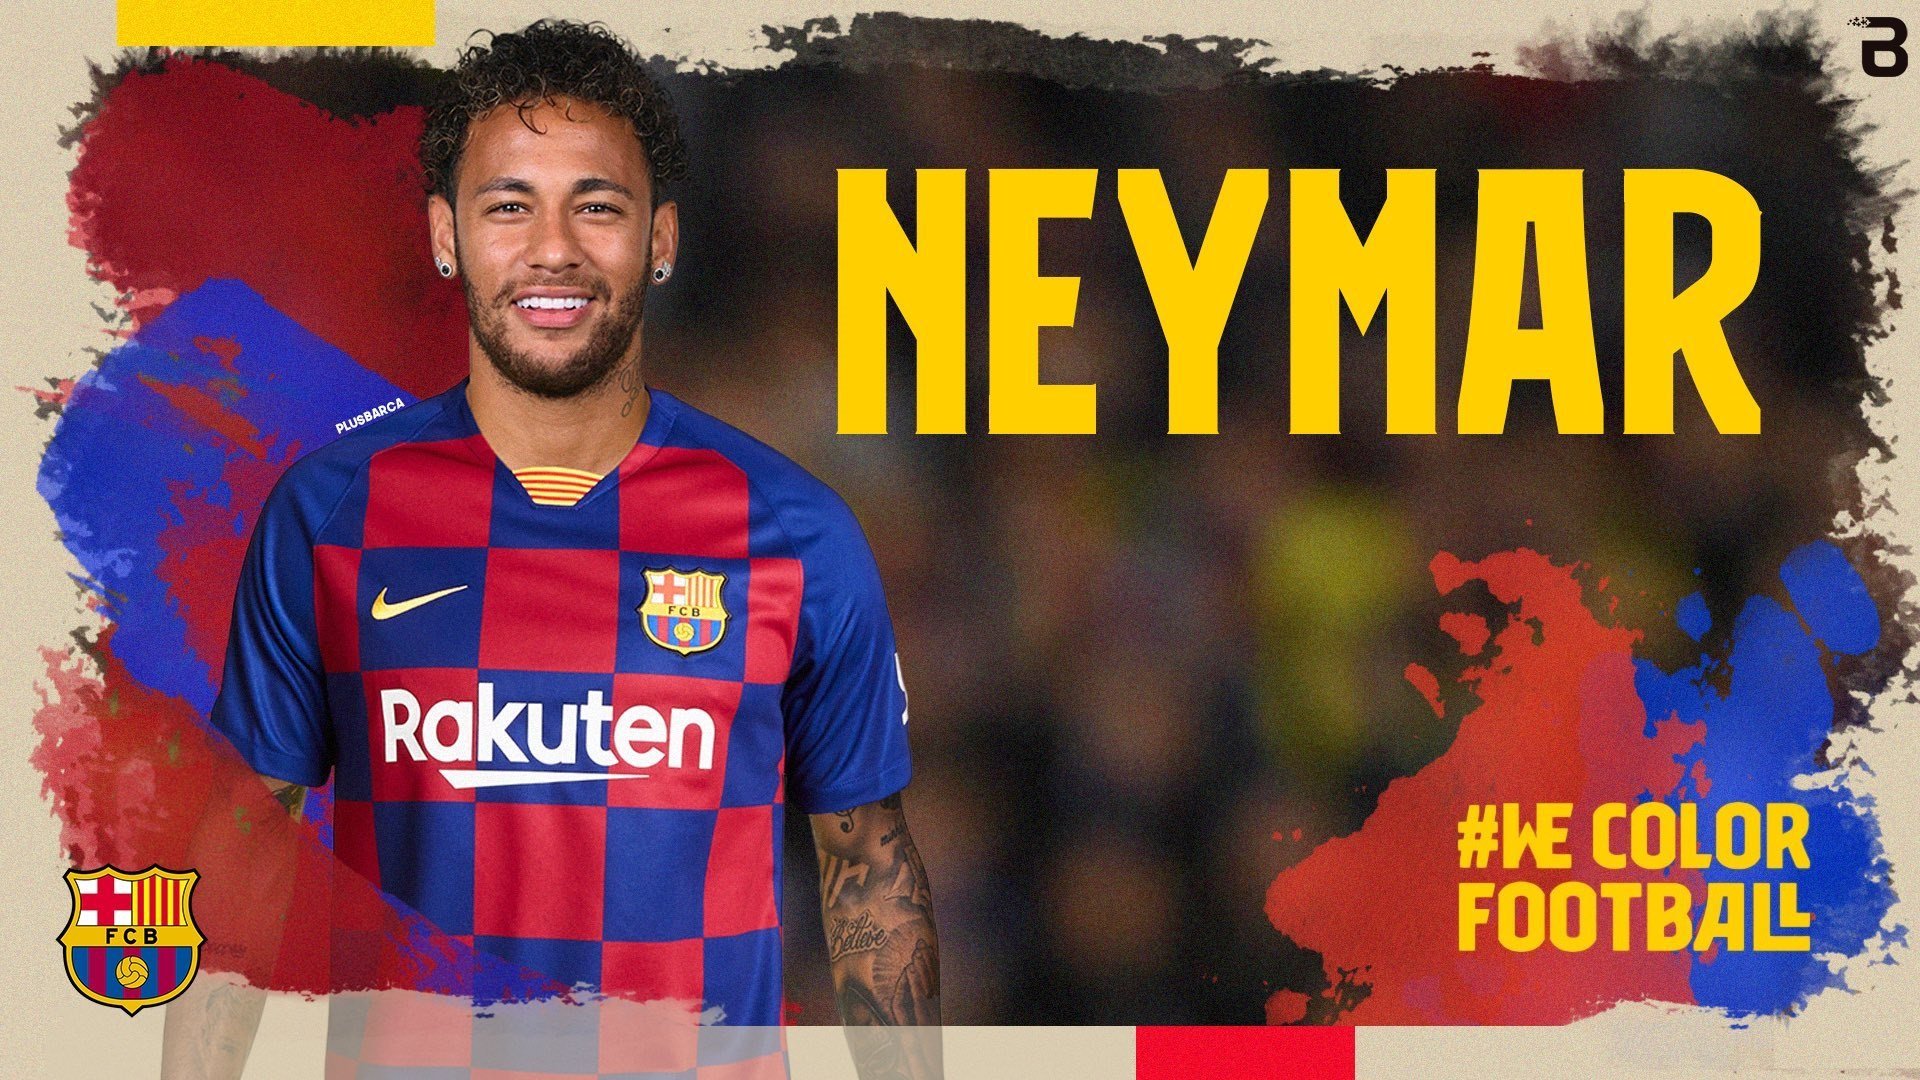 Las cuentas de Twitter del Barça son hackeadas y anuncian el fichaje de Neymar